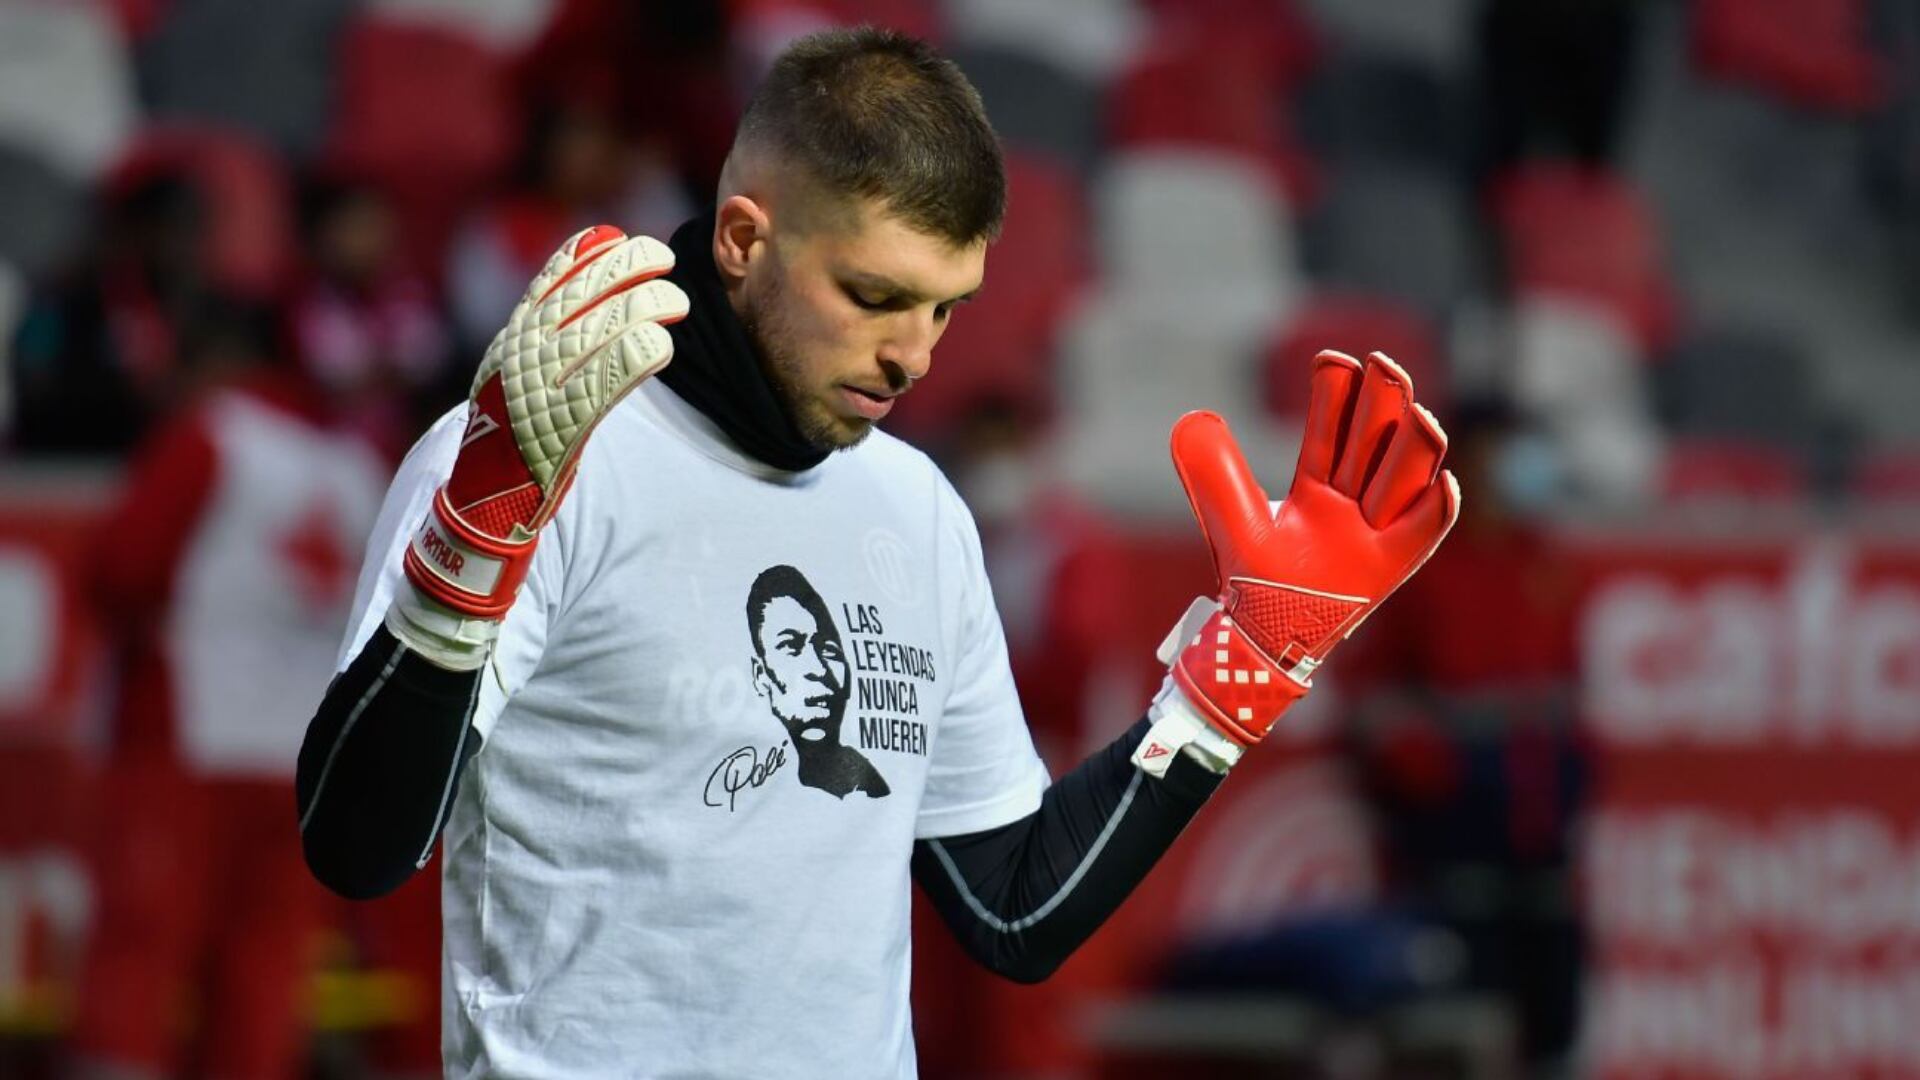 Los Jugadores de Toluca mandan mensajes de solidaridad a través de sus camisetas